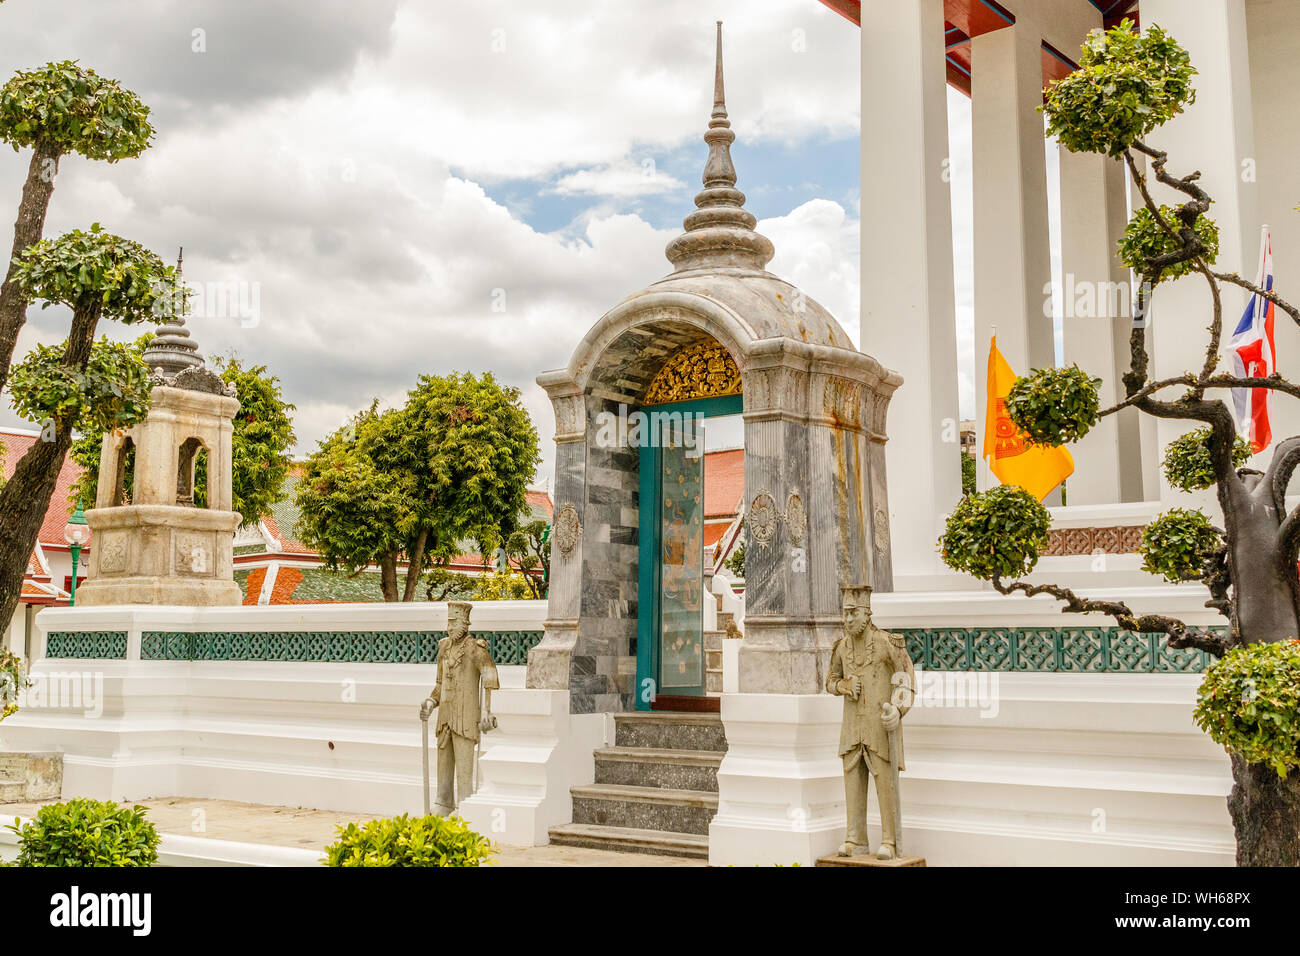 Estatuas en la entrada de Wat Suthat Thepwararam, old royal templo Budista (Wat) en Bangkok, Tailandia. Foto de stock